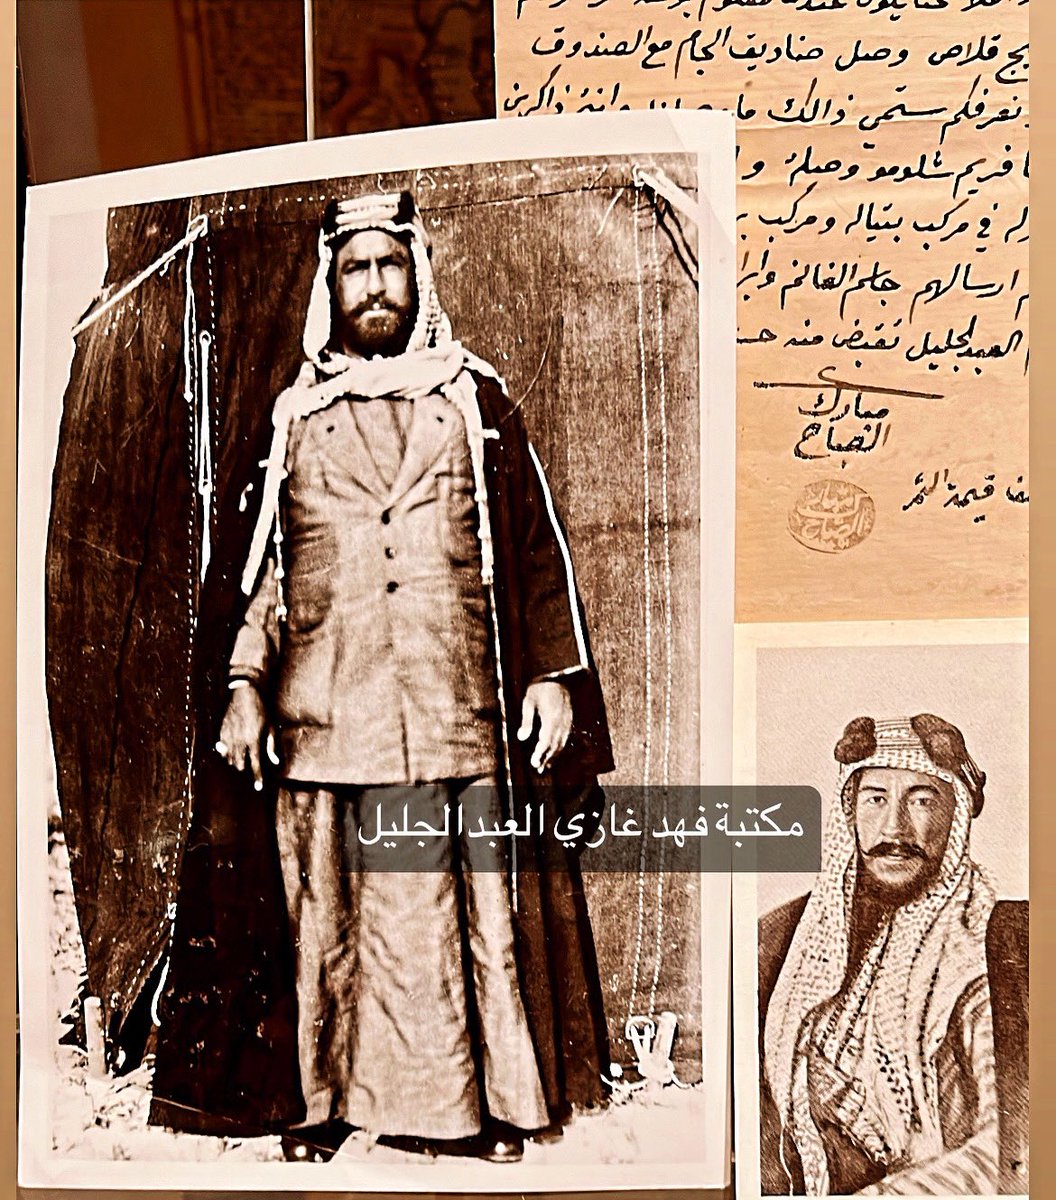 من مكتبتي
صورة الشيخ مبارك الكبير حكم من ( ١٨٩٦-١٩١٥)
صورة الشيخ أحمد الجابر ( ١٩٢١-١٩٥٠)
وثيقة أصلية عام ١٩١١ بتوقيع وختم الشيخ مبارك الكبير